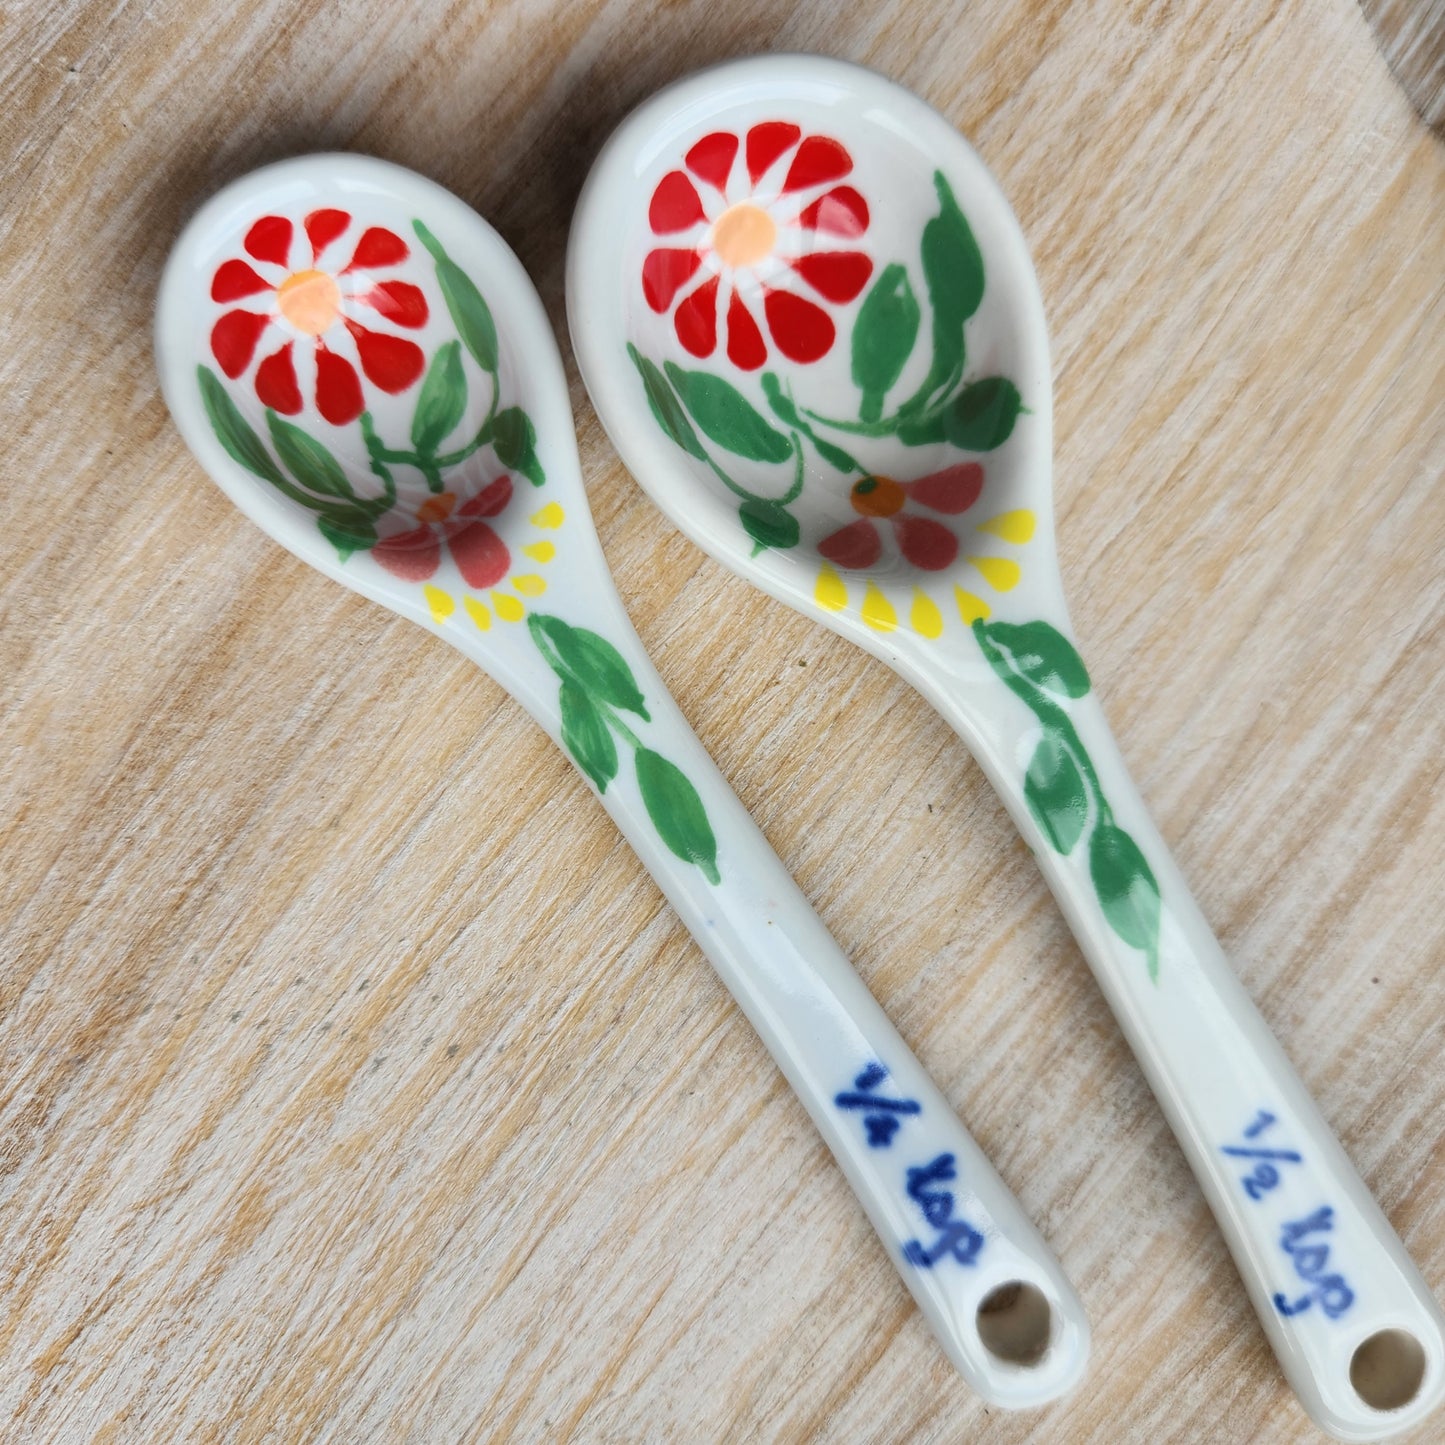 Sang Hoa Ceramic Measuring Spoons